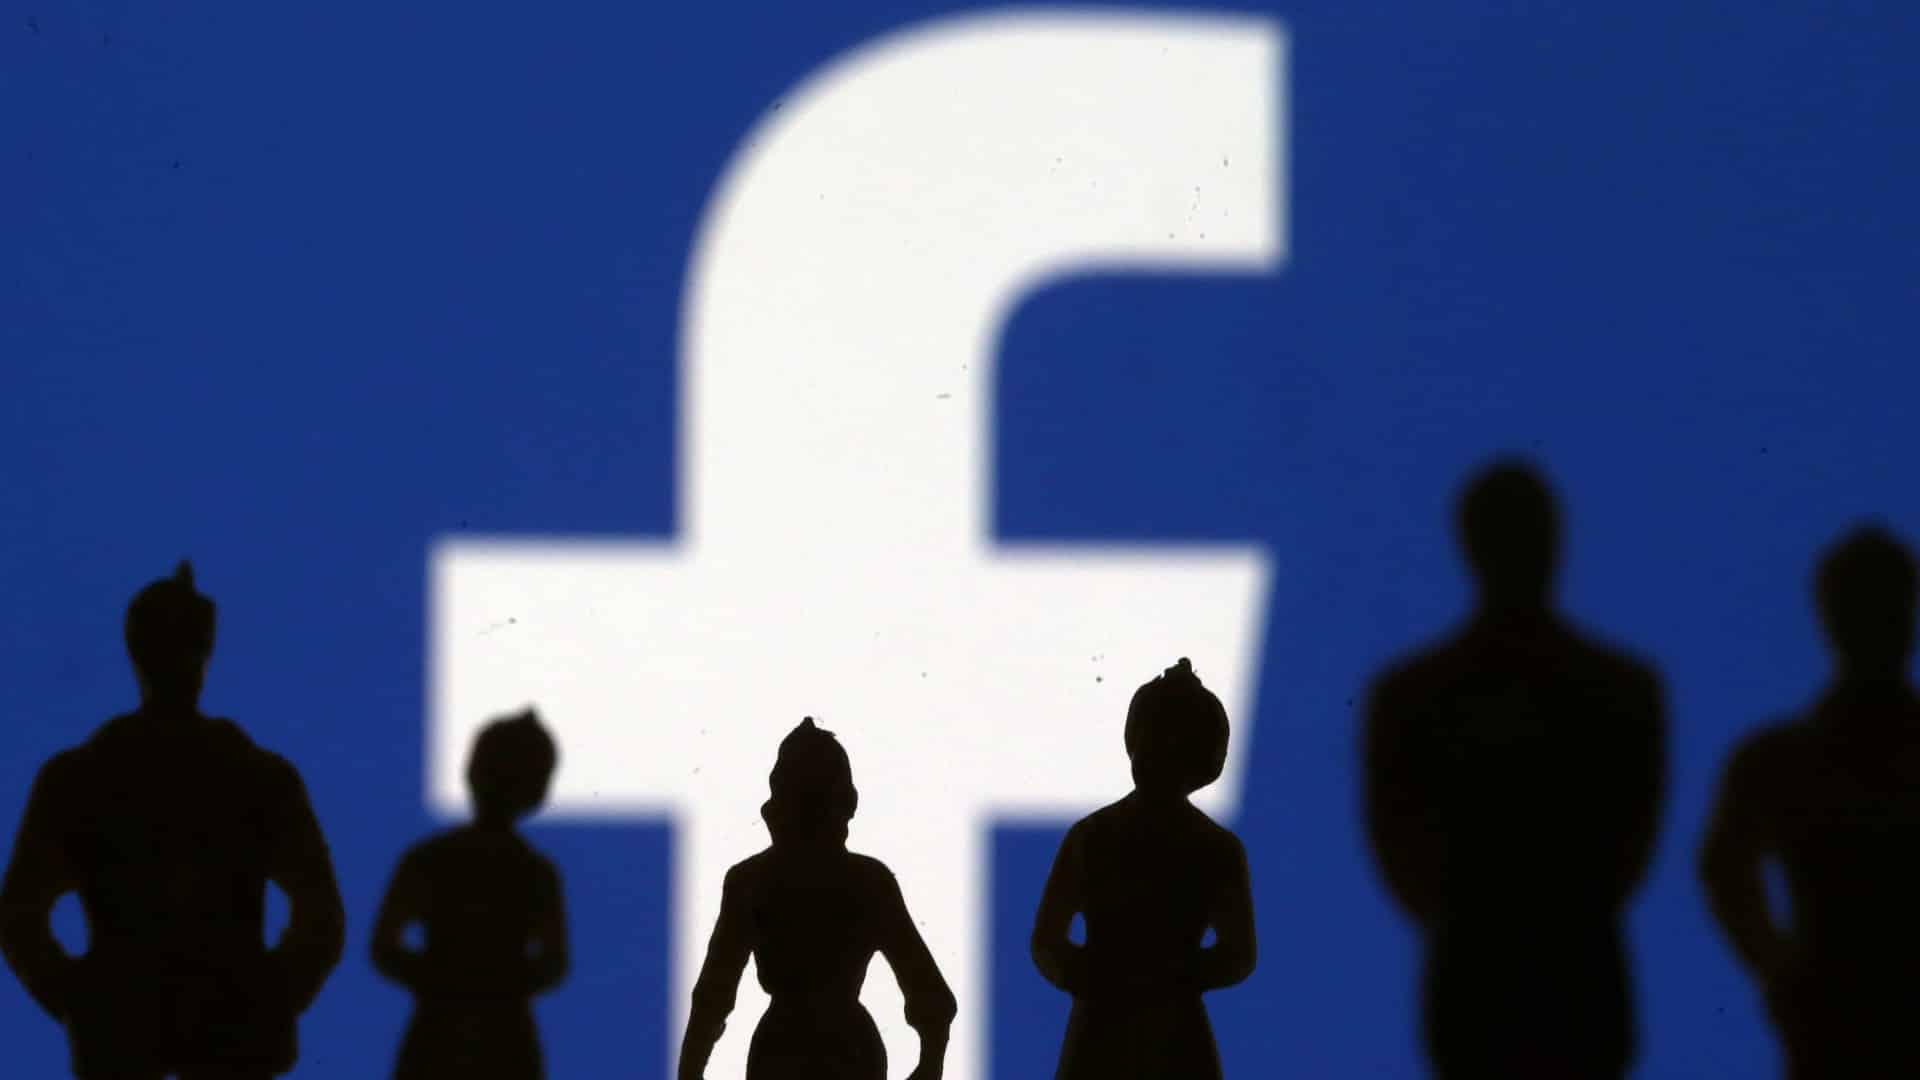 فيسبوك: عملة ليبرا لن تتحكم فيها شركة واحدة